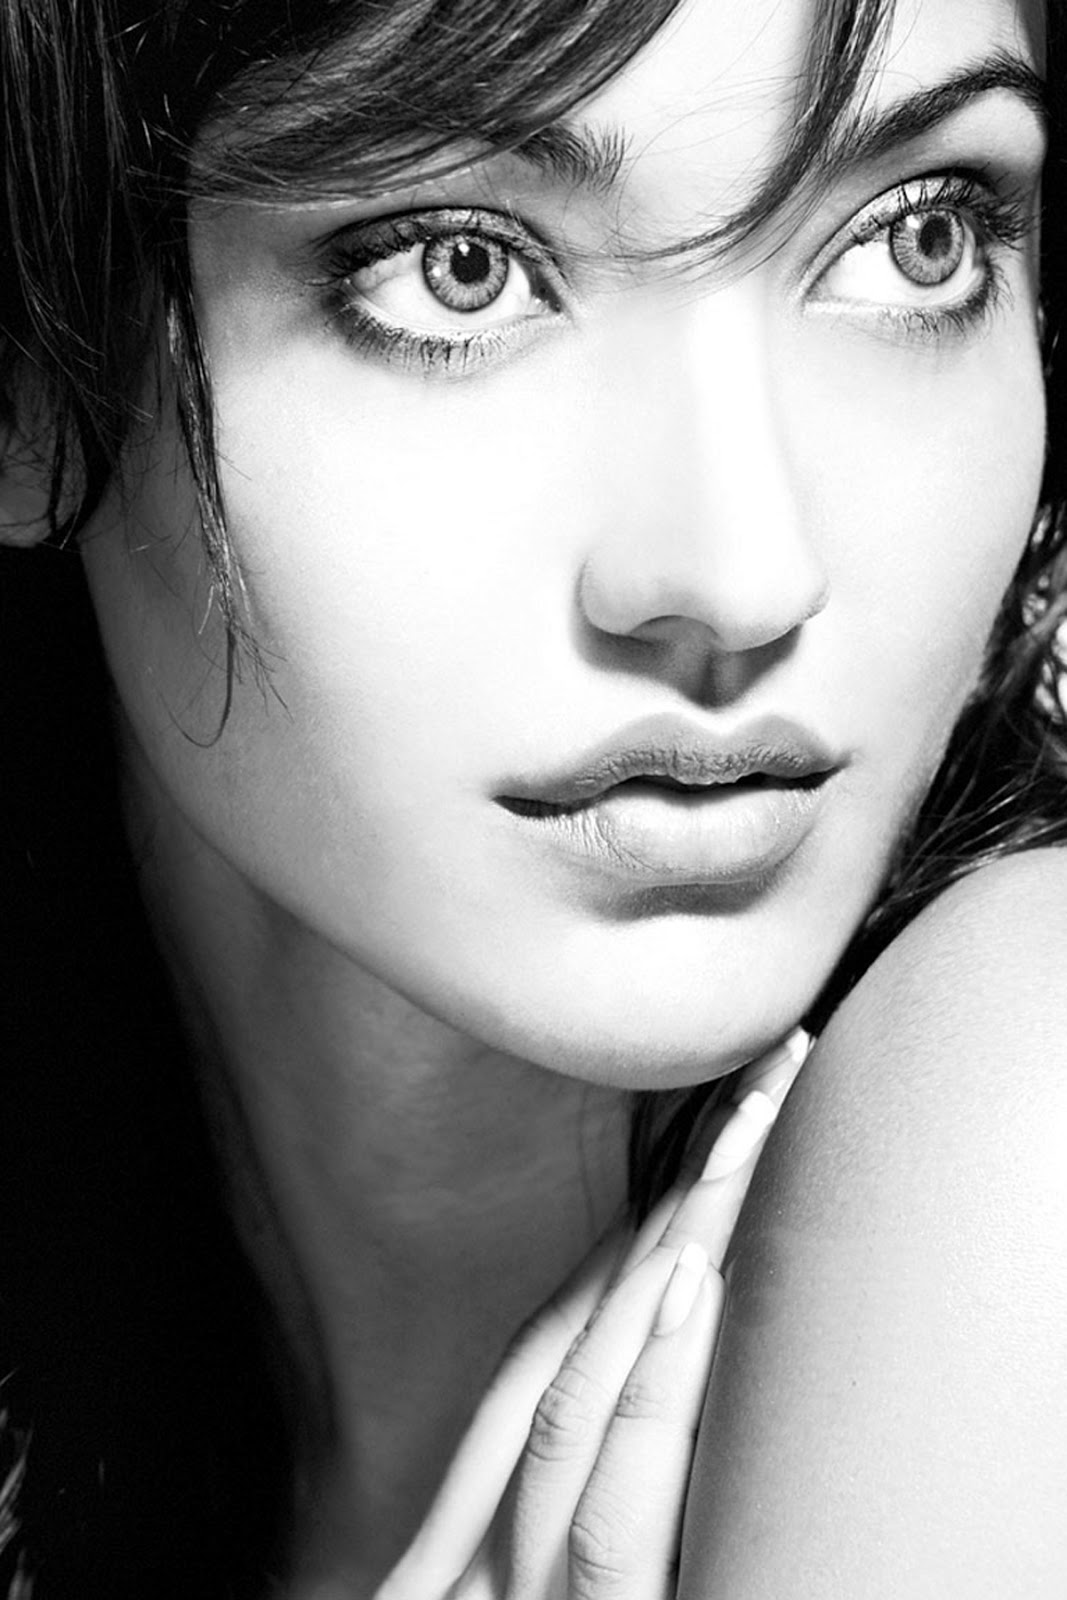 actrice bollywood fonds d'écran hd pour mobile,visage,cheveux,sourcil,lèvre,beauté